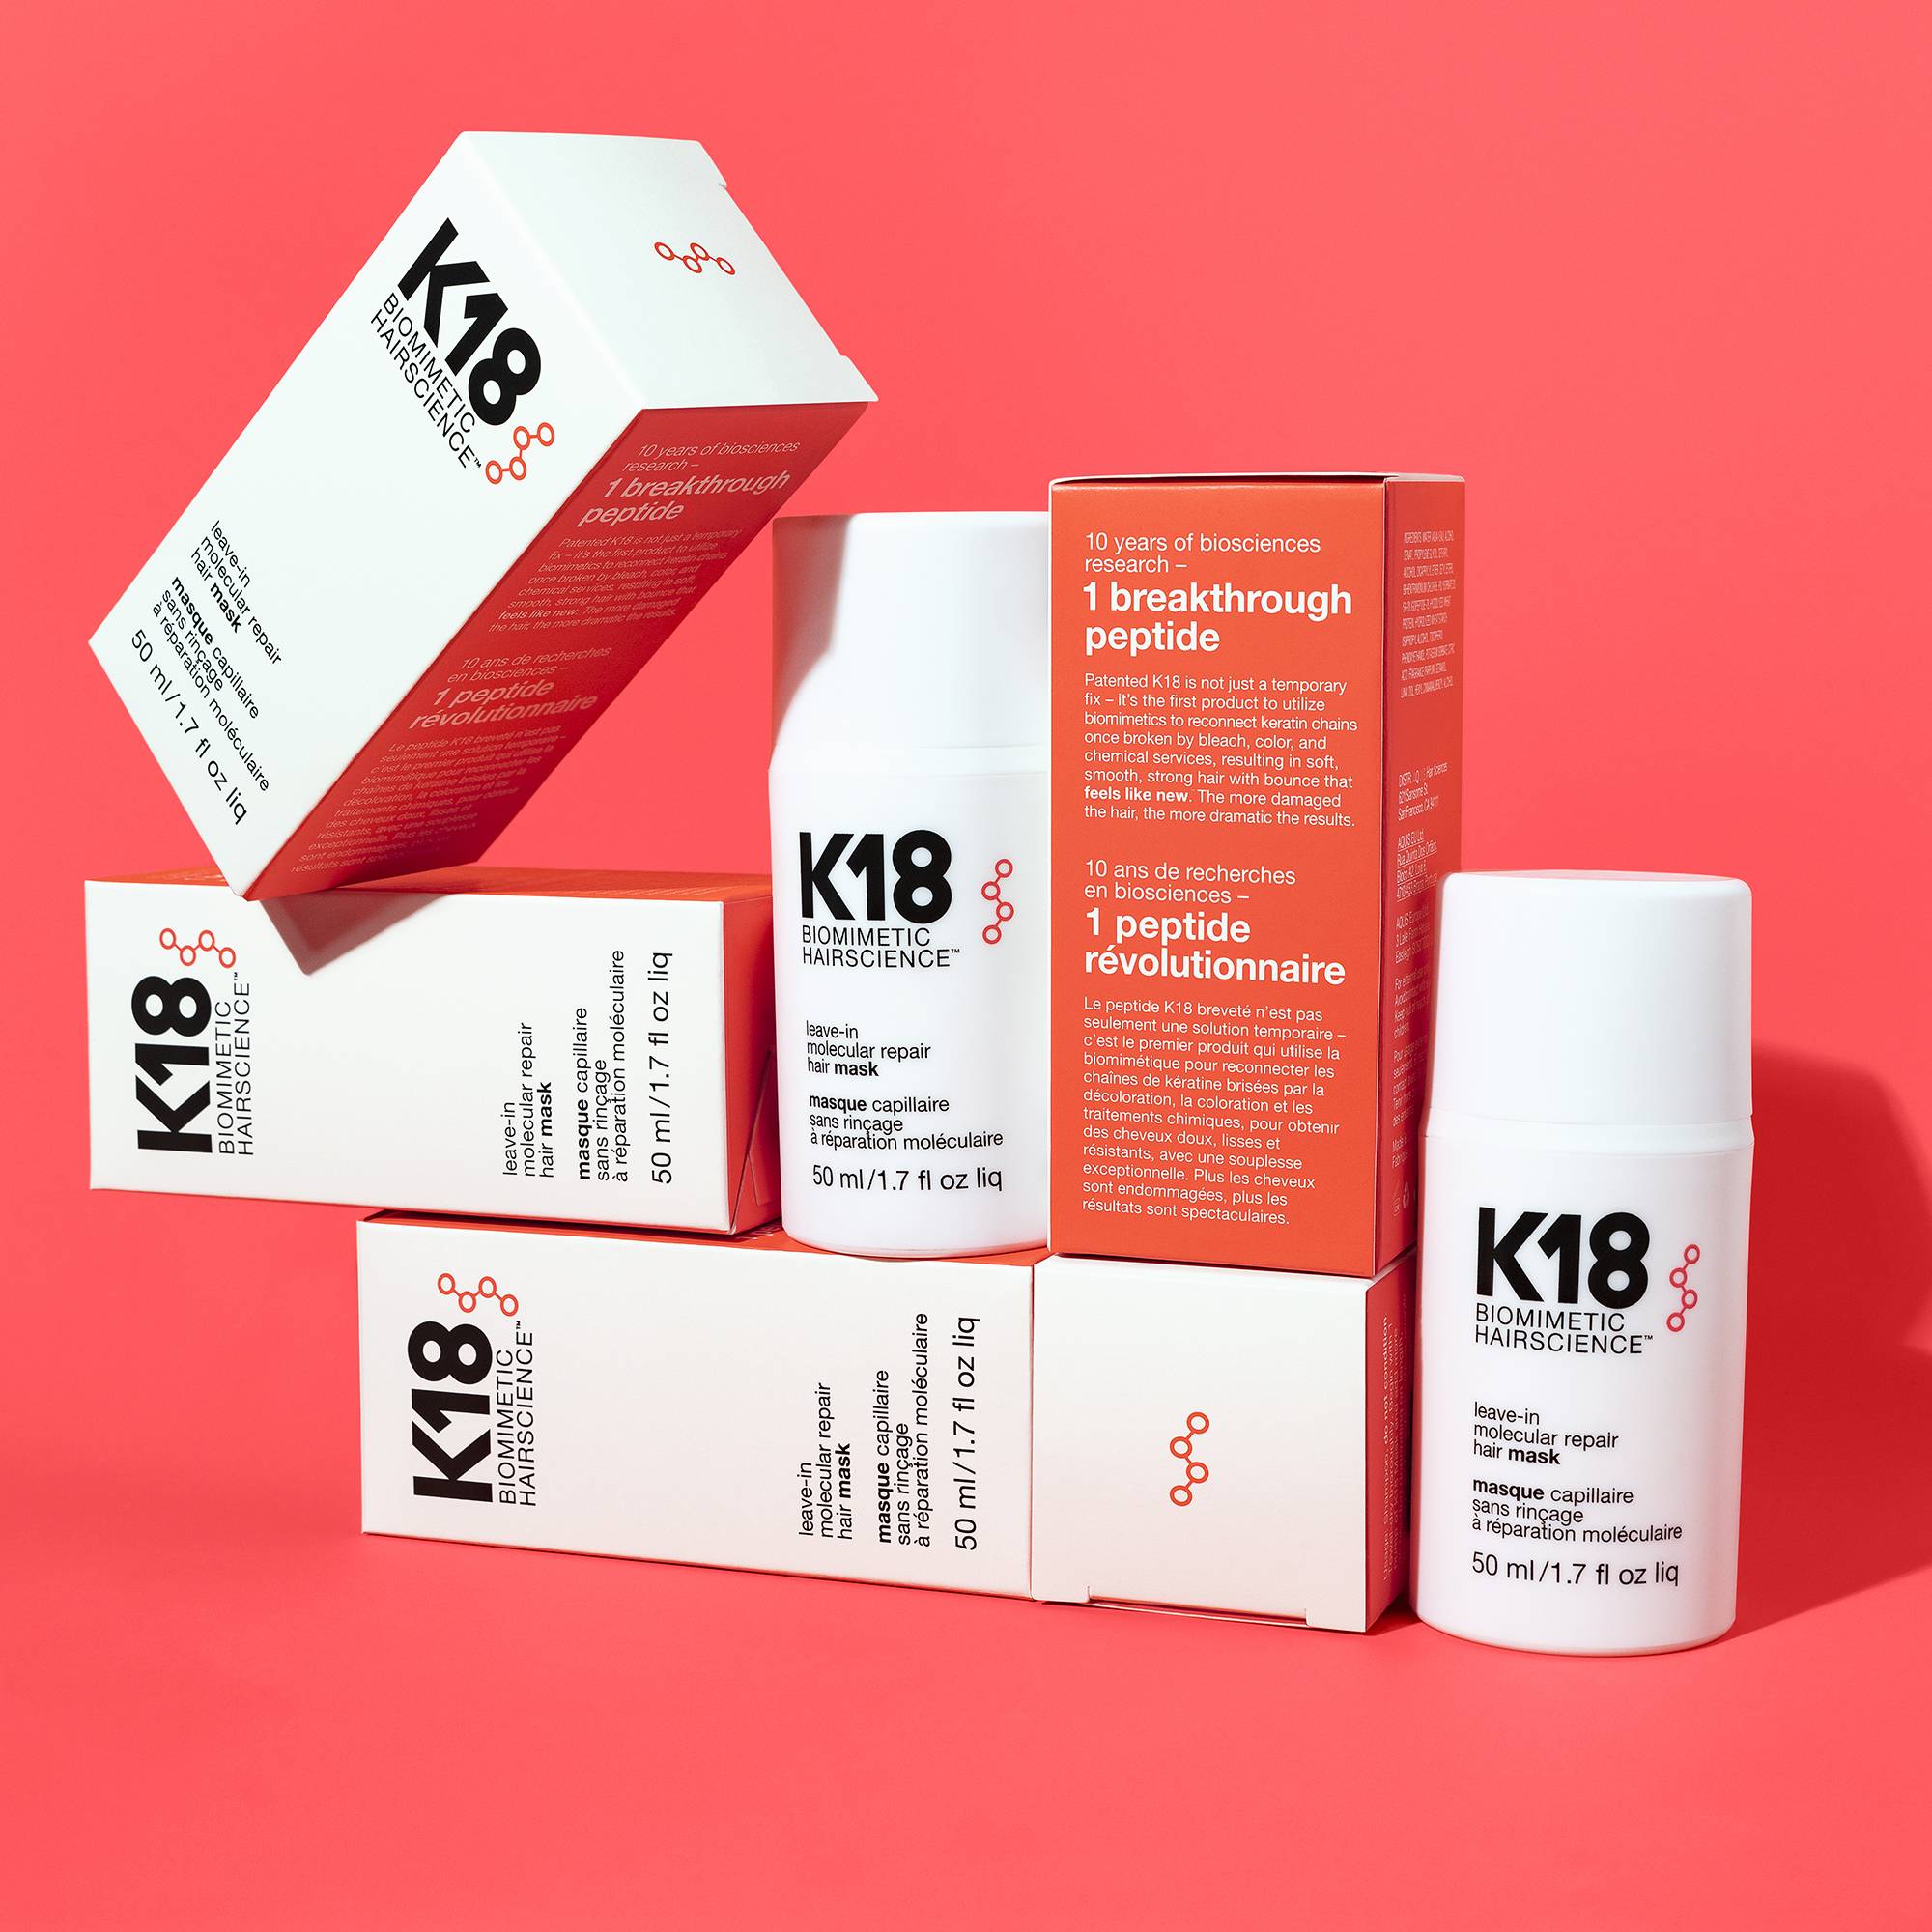 Masque sans rinçage réparation moléculaire Hair Mask de la marque K18 Biomimetic HairScience Contenance 50ml - 5